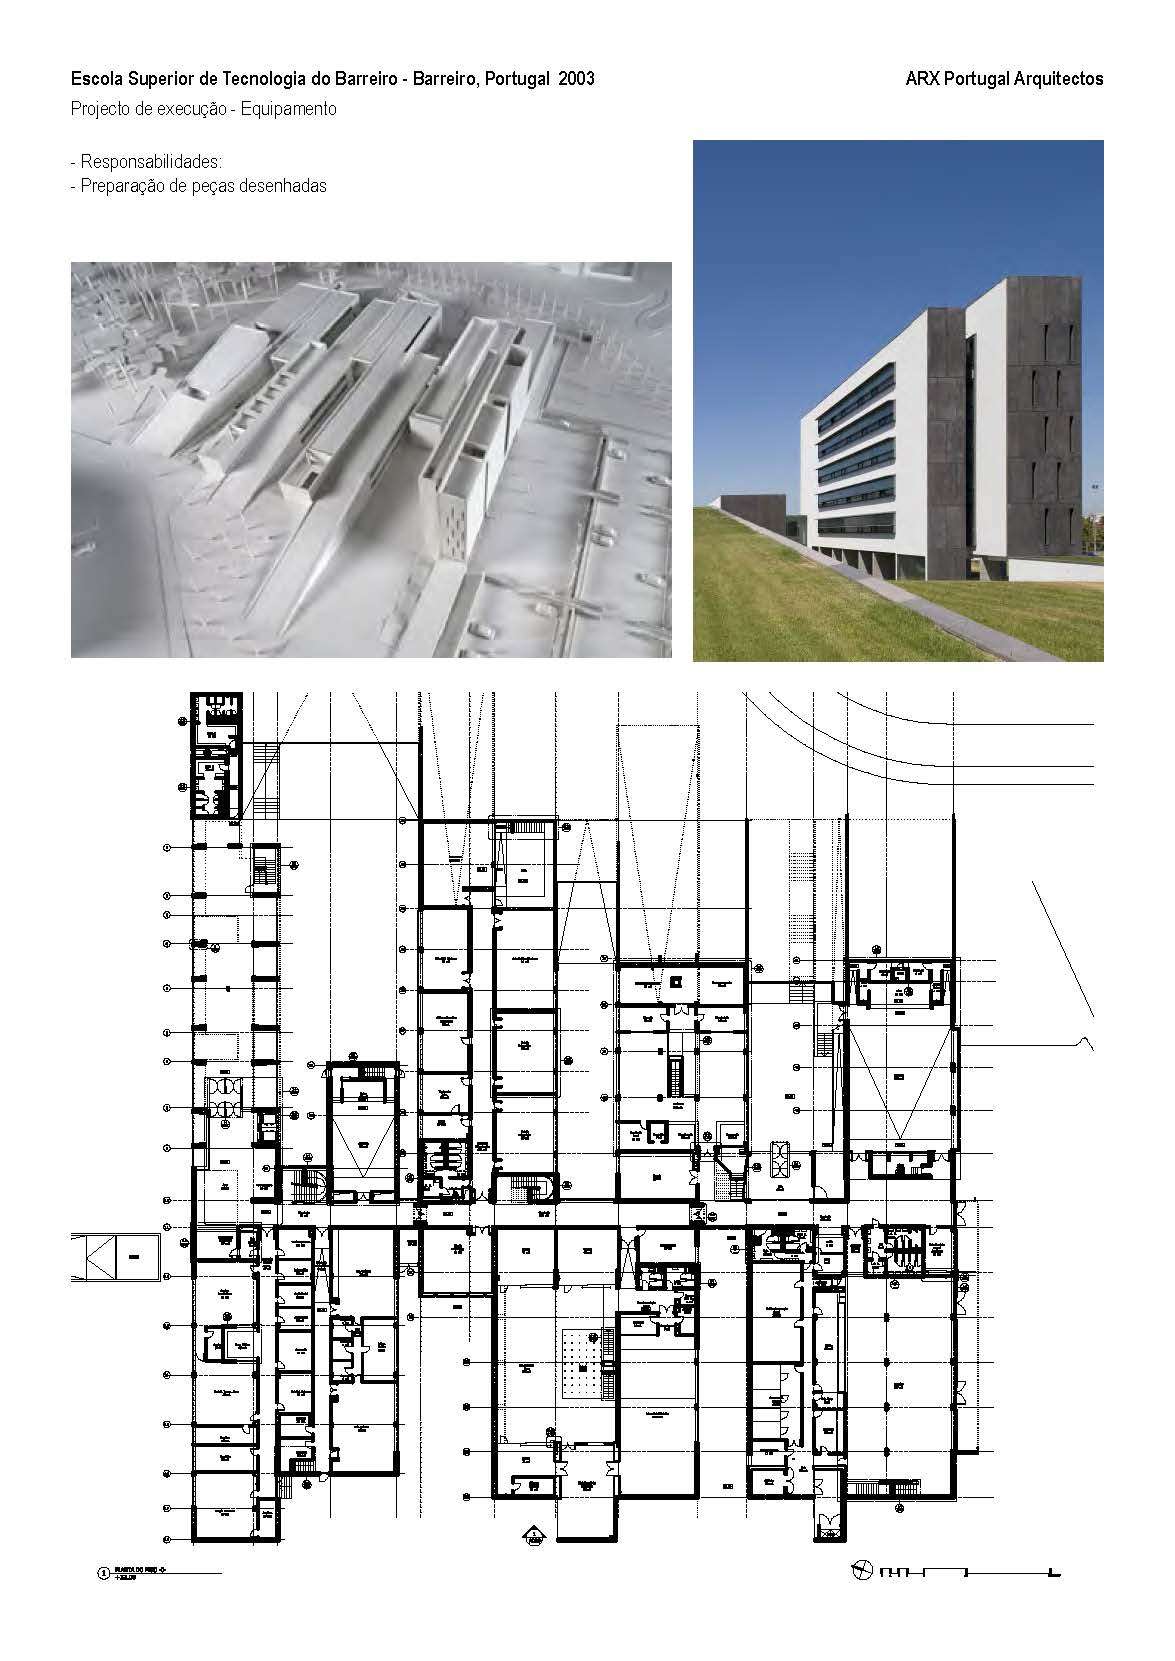 Pedro Tiago de Sousa - Oeiras - Arquitetura Online